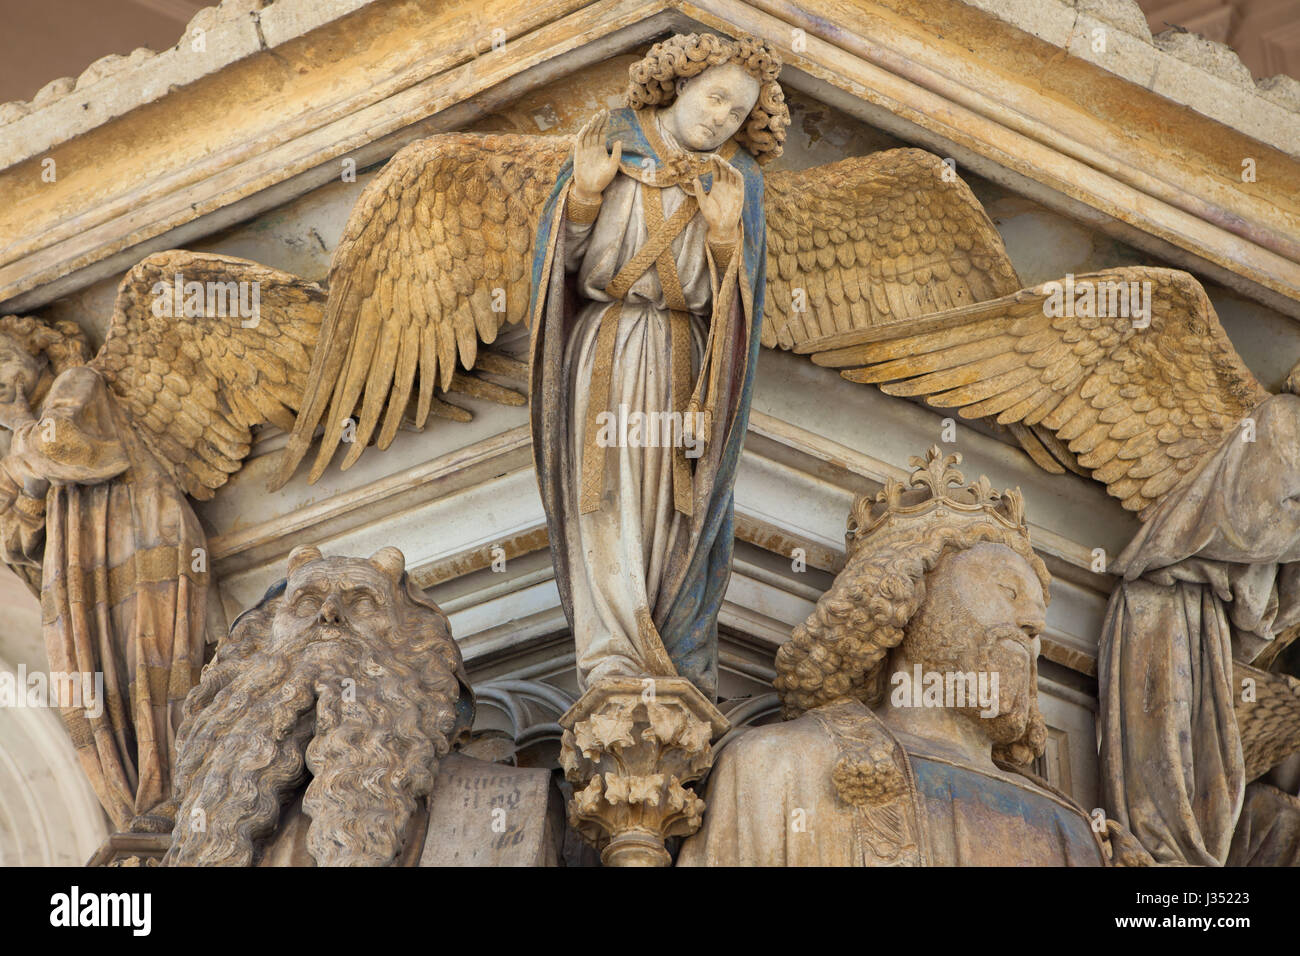 Matin angel, Moïse et le roi David représenté sur le puits de Moïse de Claus Sluter, sculpteur de la Renaissance néerlandaise dans la Chartreuse de Champmol à Dijon, Bourgogne, France. Banque D'Images